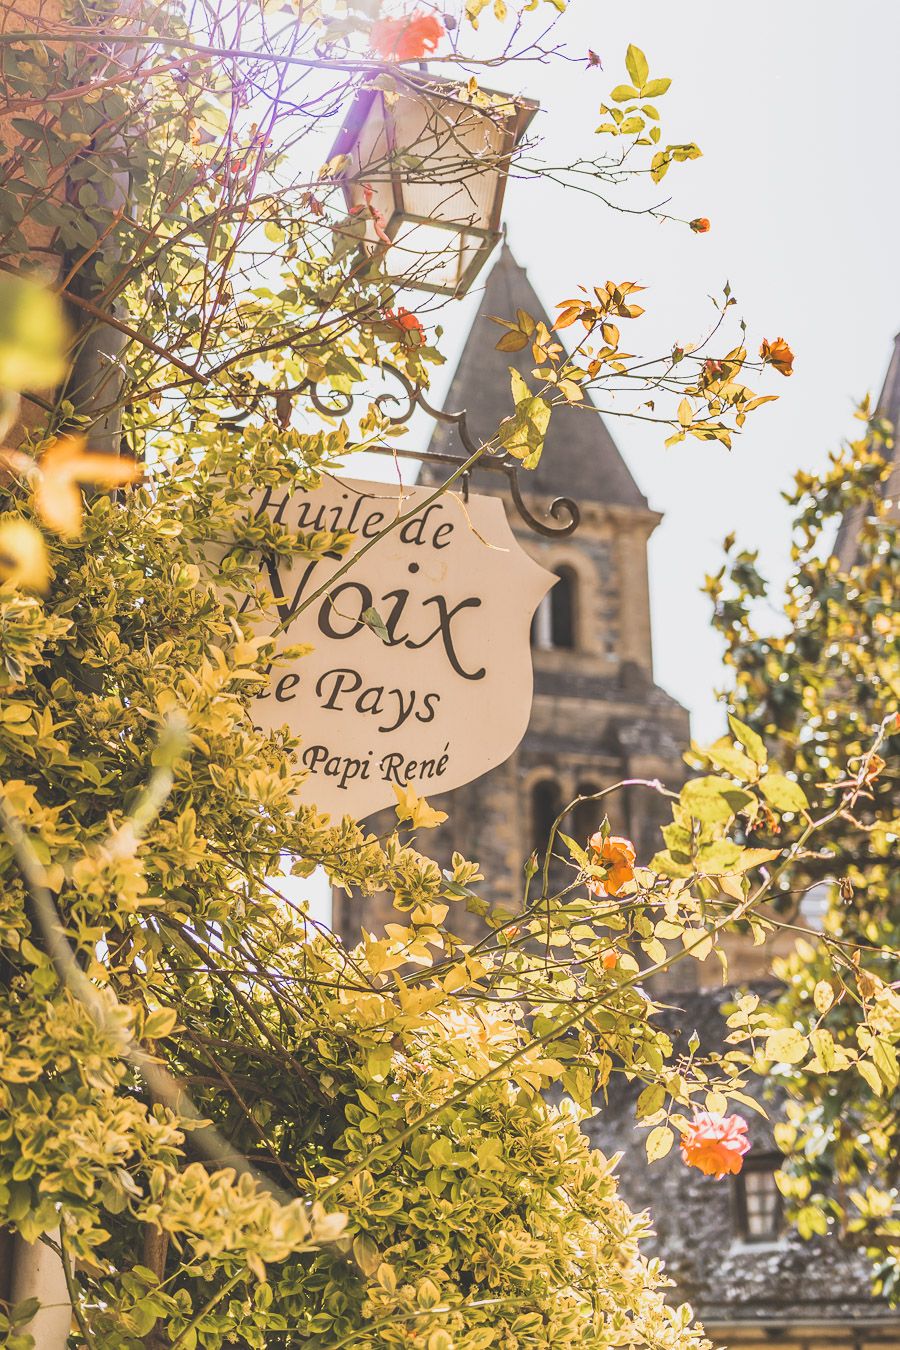 Plus beaux villages de France : Conques